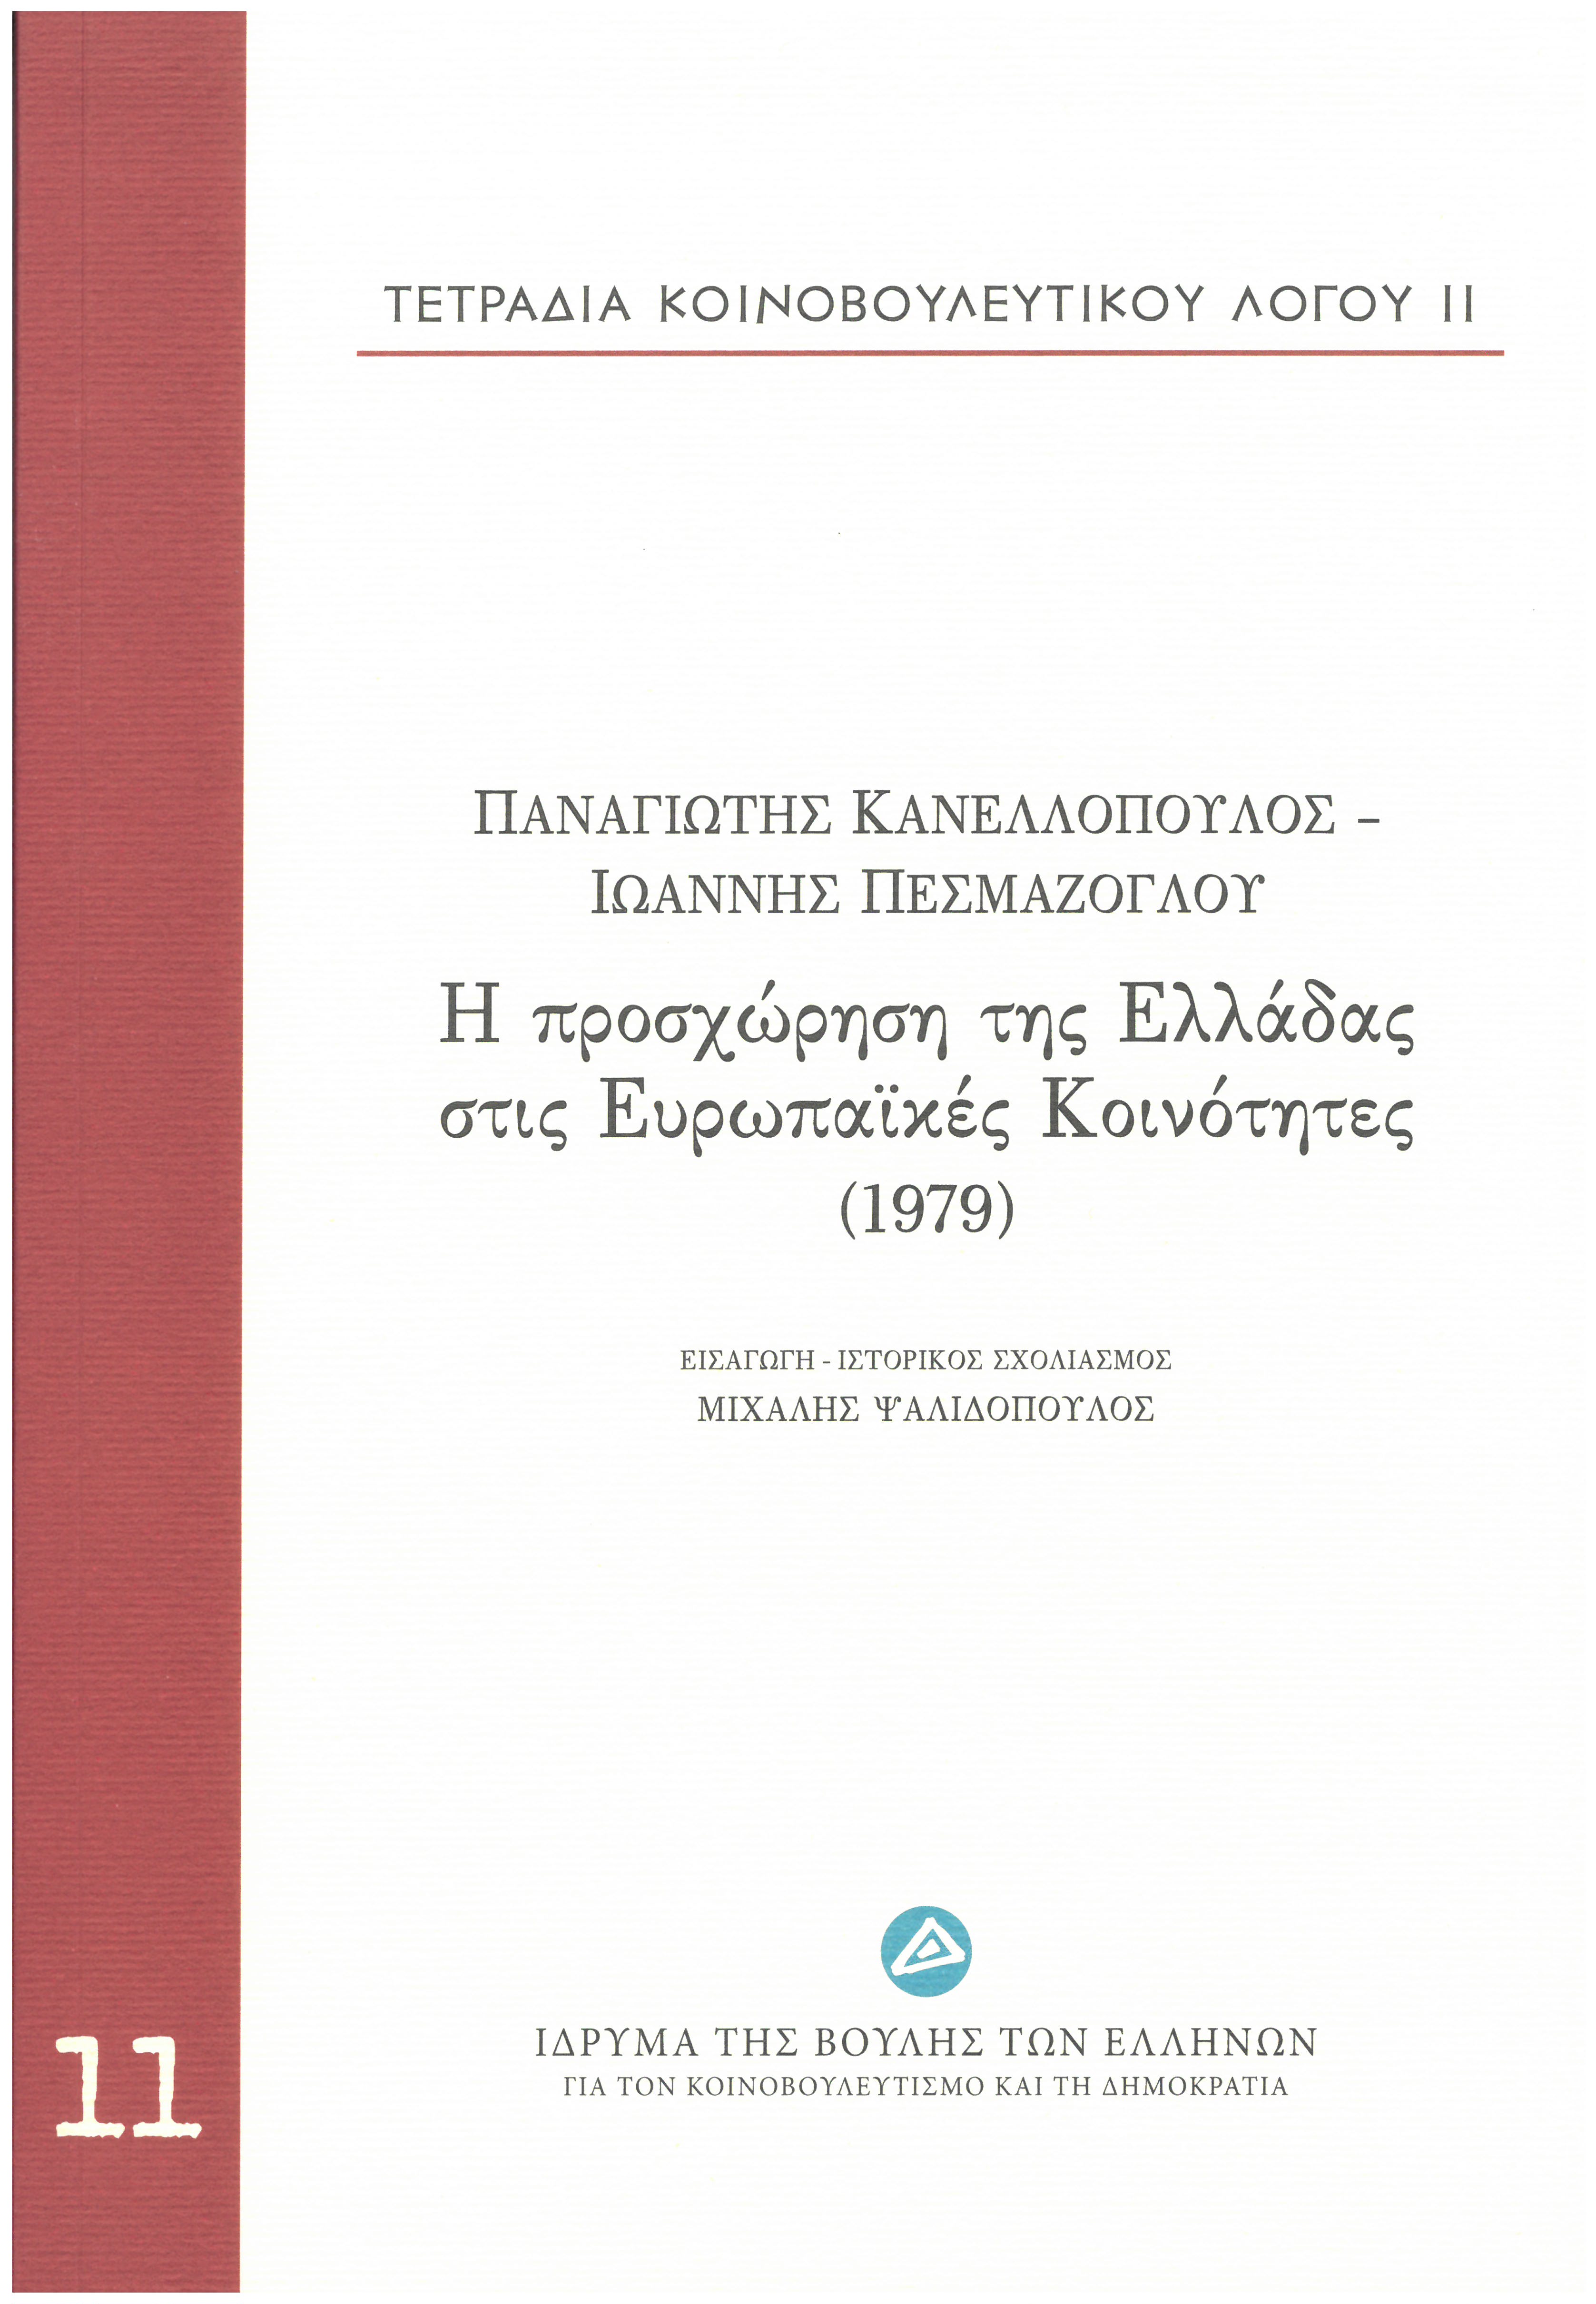 Τετράδια κοινοβουλευτικού λόγου: Η προσχώρηση της Ελλάδας στις Ευρωπαϊκές Κοινότητες (1979), , Κανελλόπουλος, Παναγιώτης Κ., 1902-1986, Ίδρυμα της Βουλής των Ελλήνων, 2013